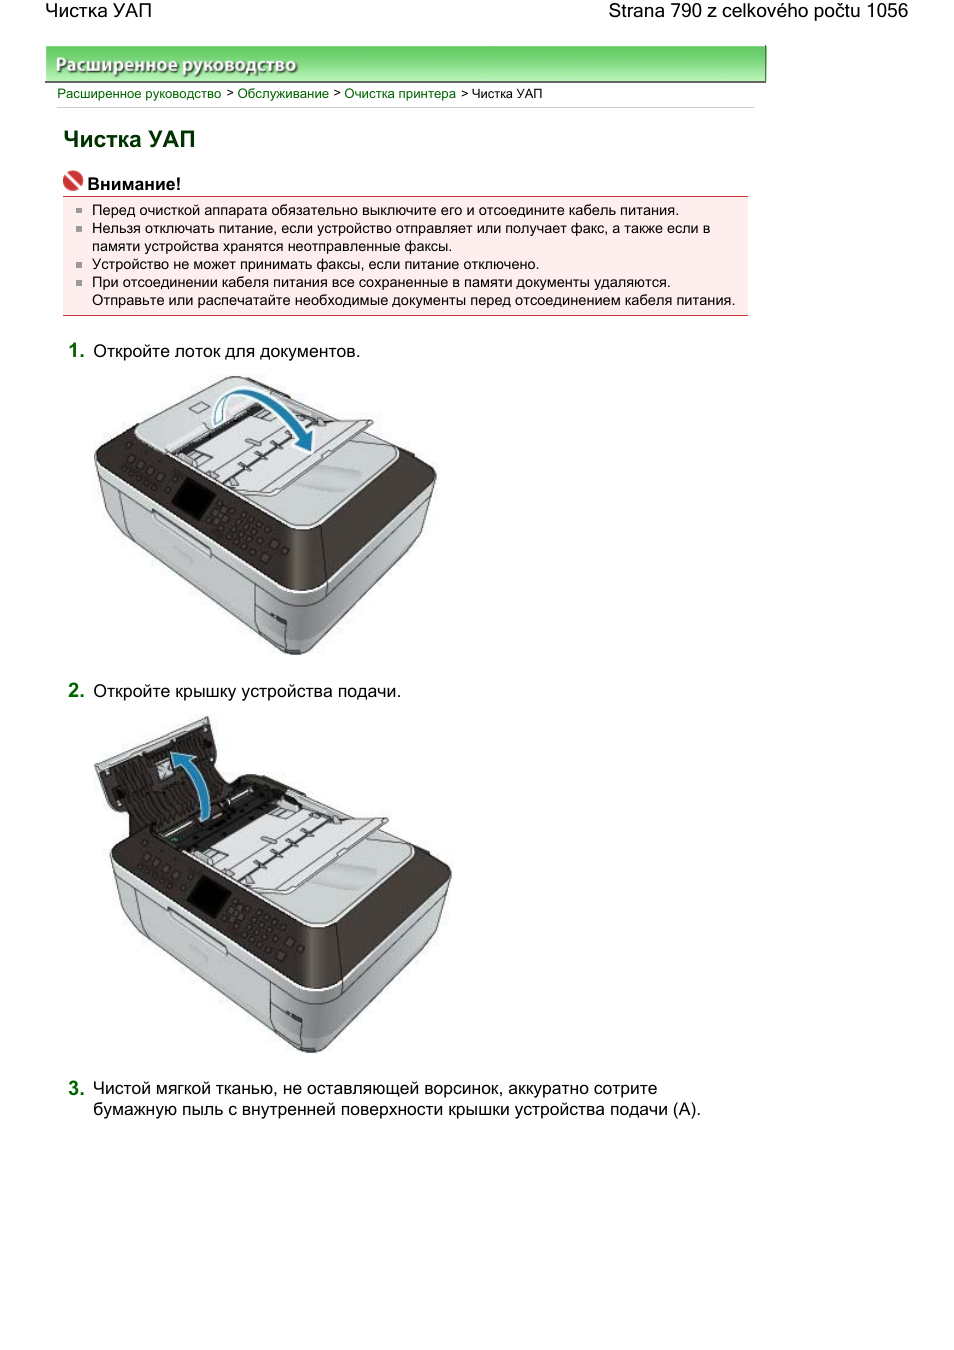 Как запустить очистку принтера